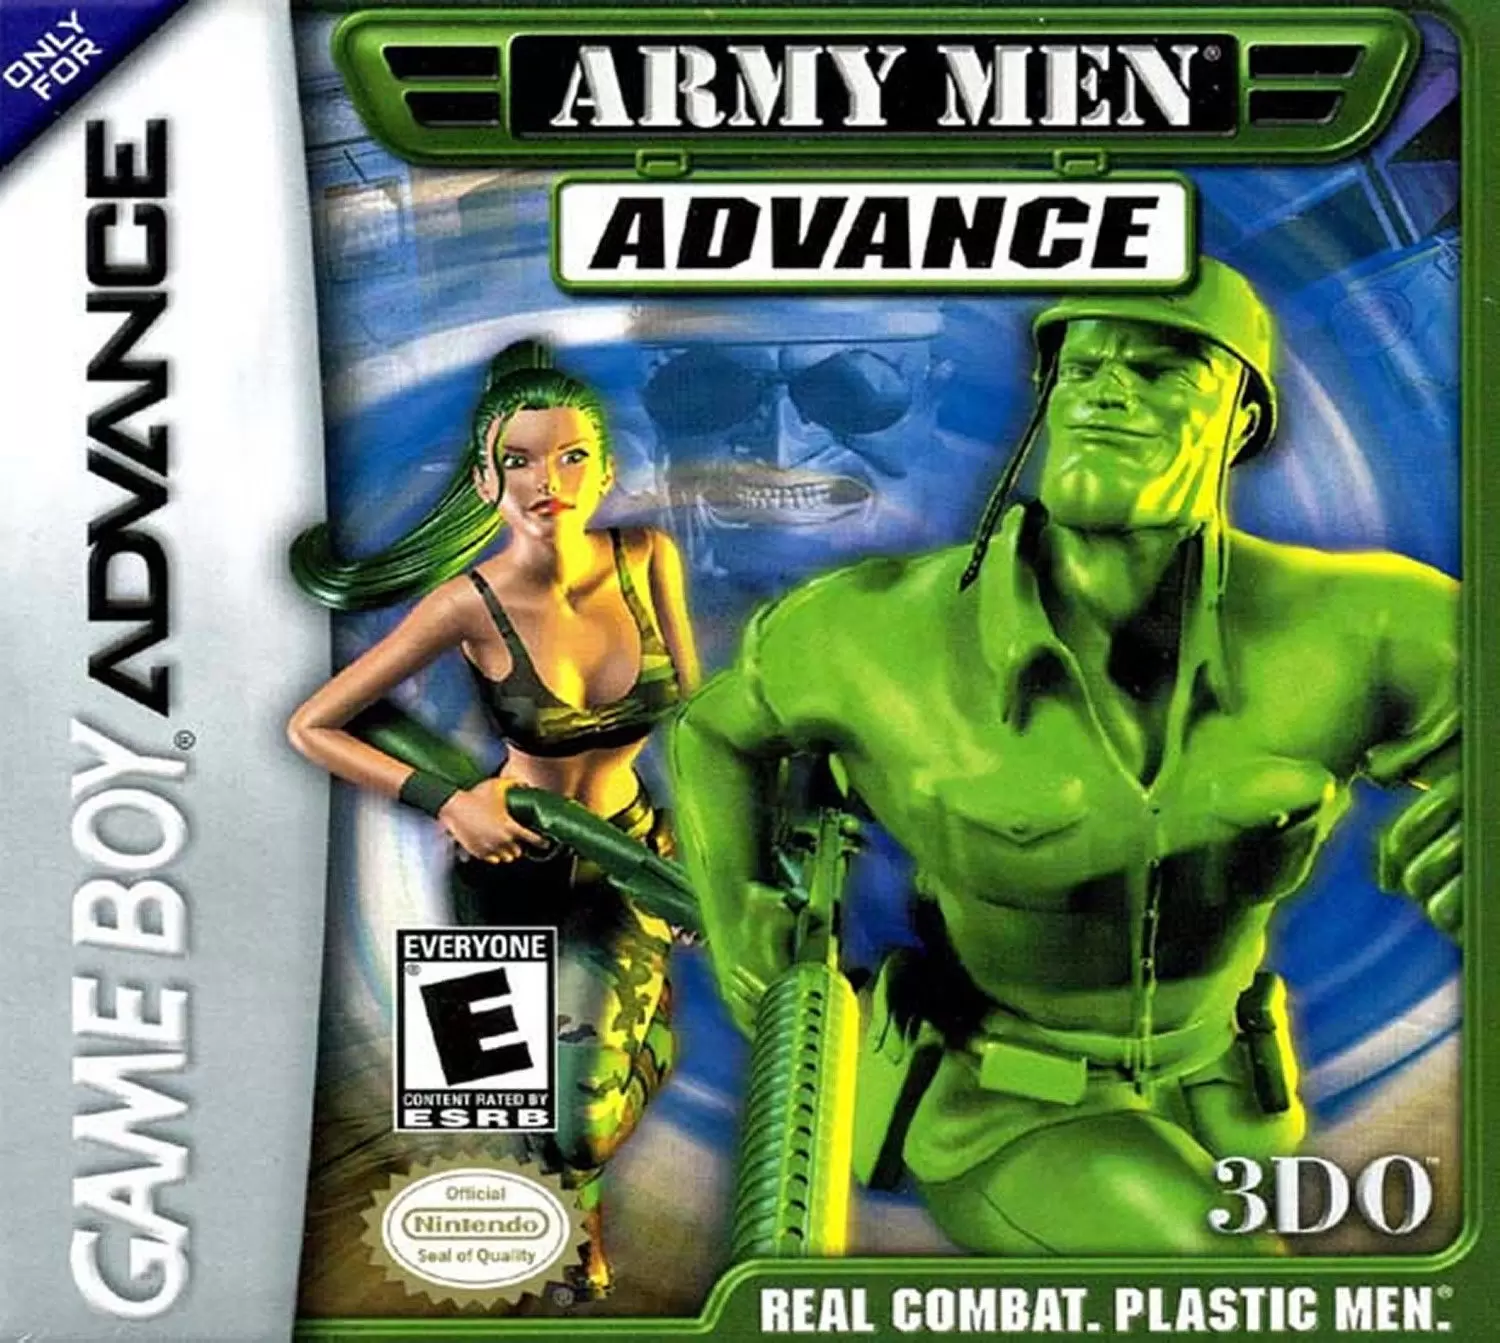 Game Boy Advance Games - Army Men Advance